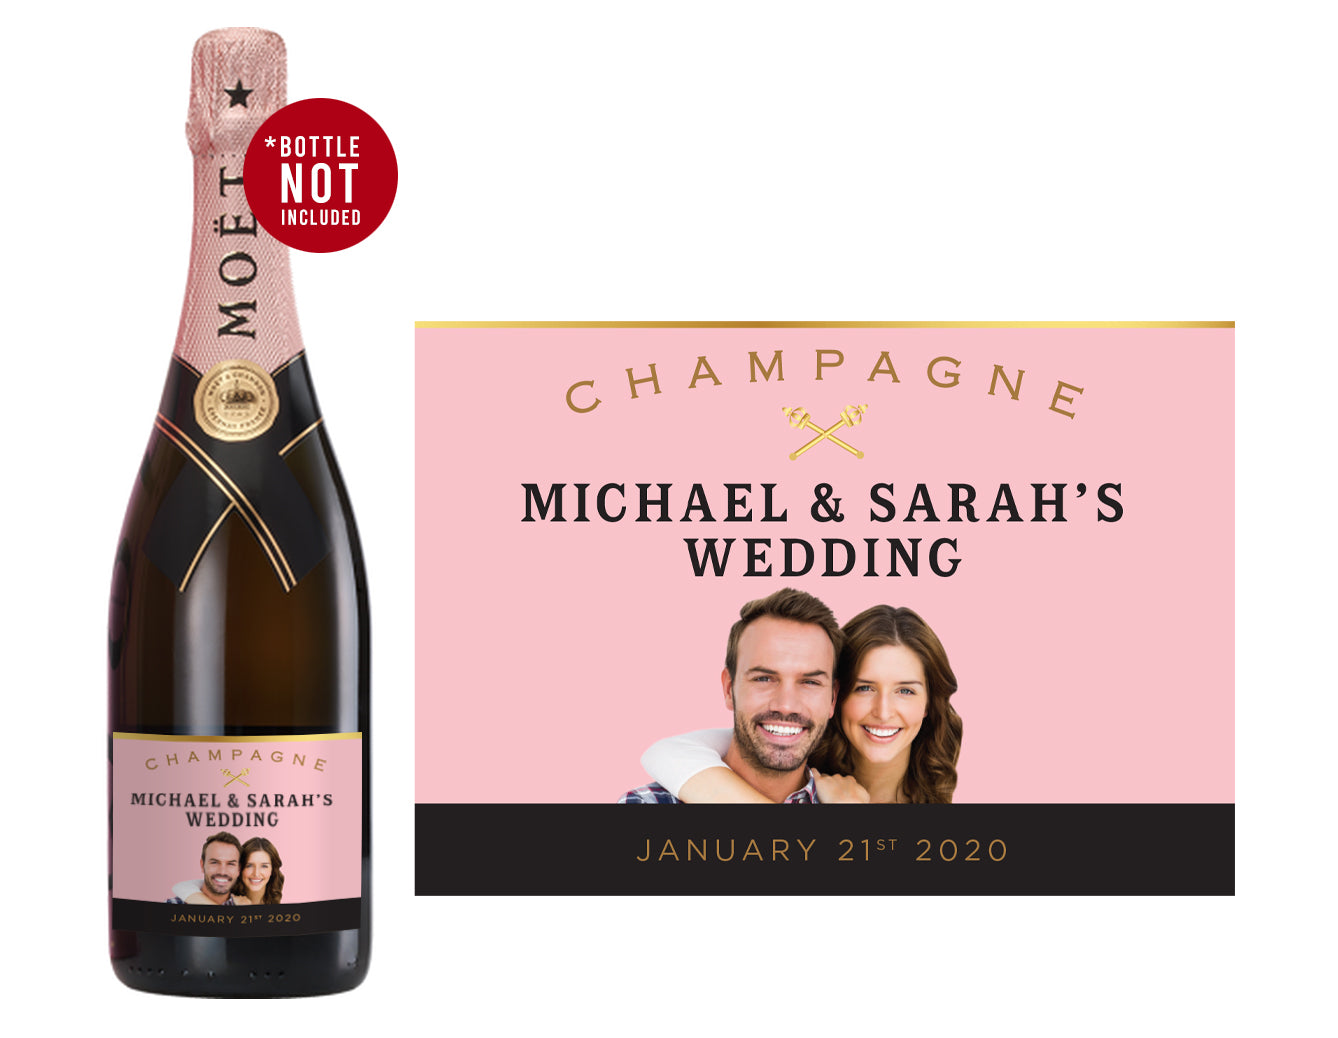 Wine Champagne Moët & Chandon Dom Pérignon Rosé, wine, text, logo